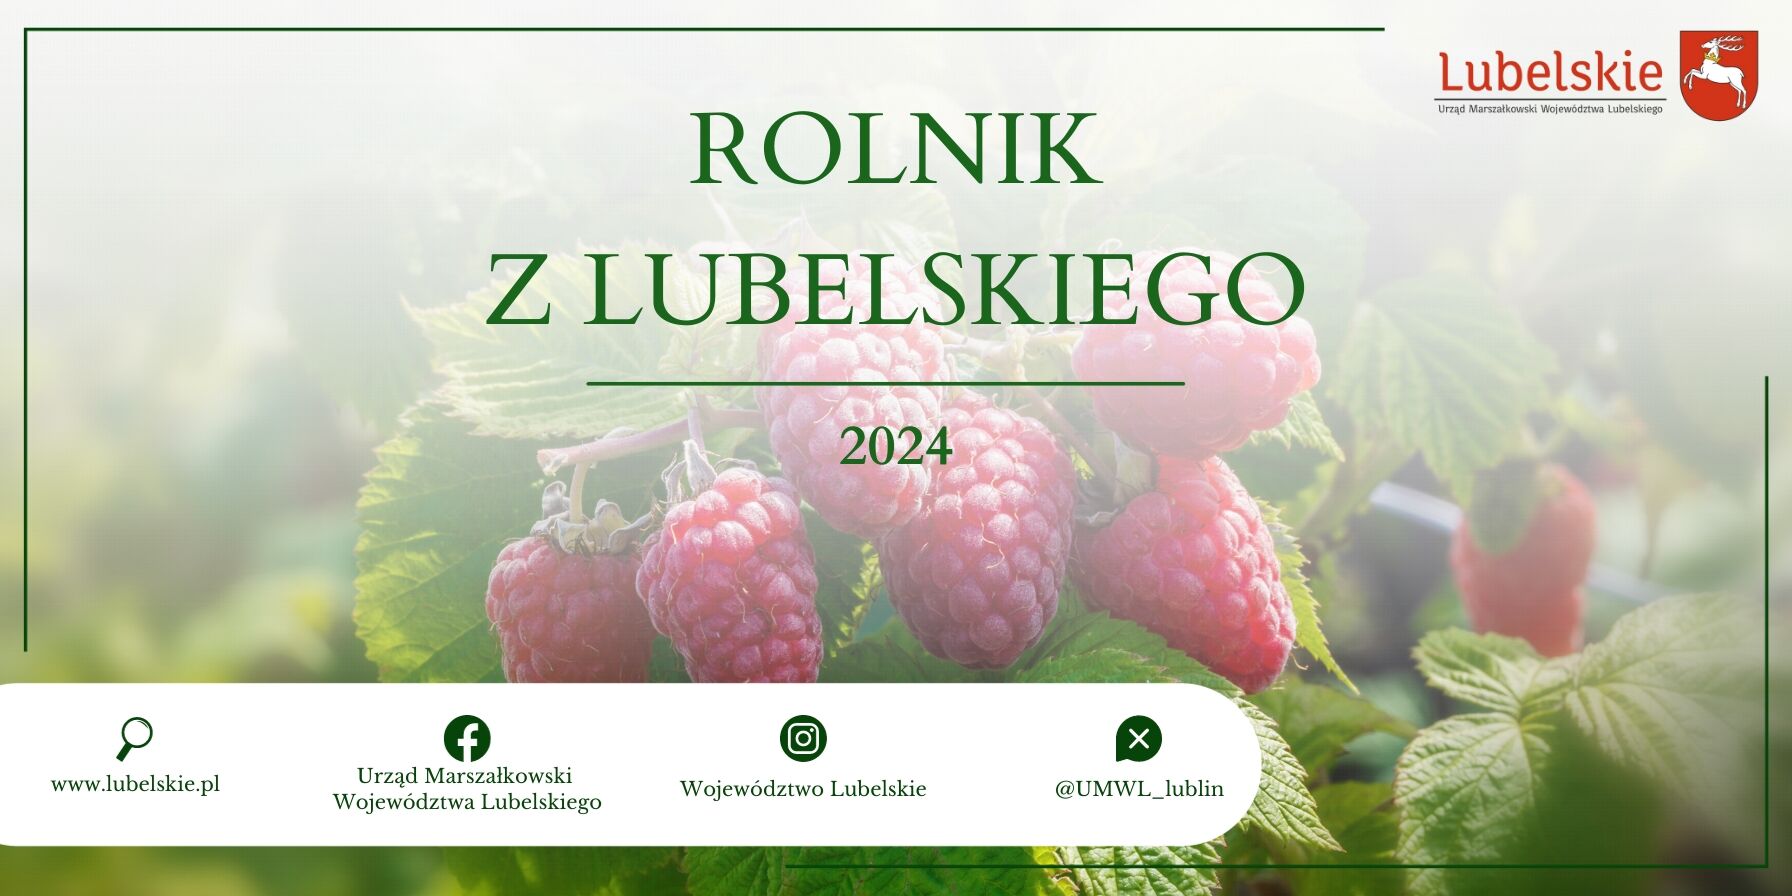 Banner promocyjny z dojrzałymi malinami w tle z napisem "Rolnik z Lubelskiego 2024", logo urzędu marszałkowskiego i województwa Lubelskiego.